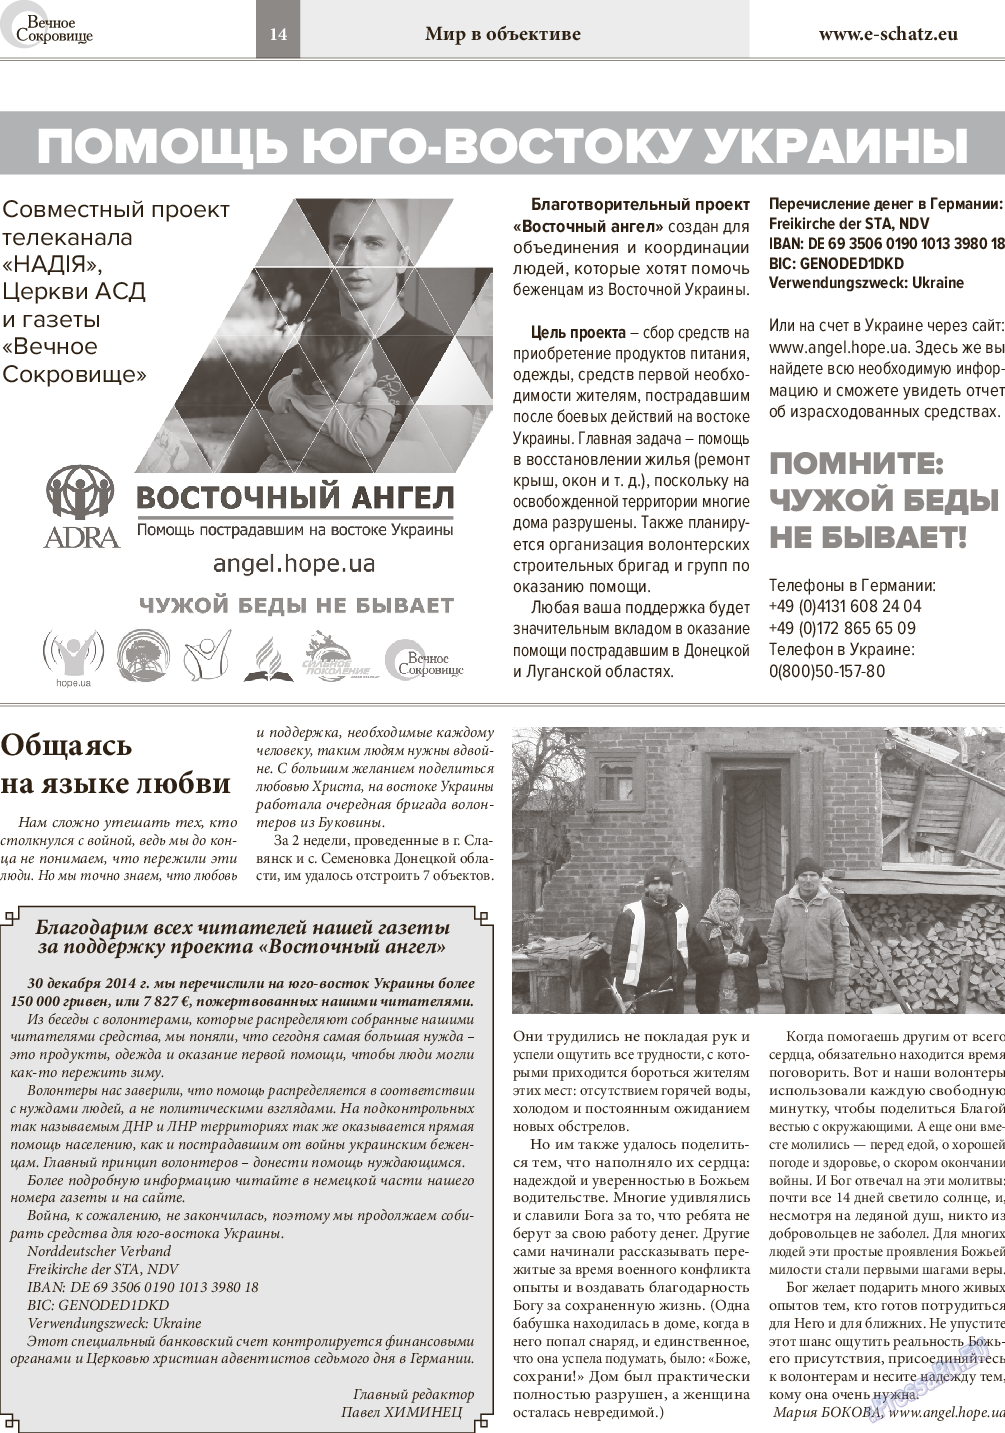 Вечное сокровище, газета. 2015 №1 стр.14